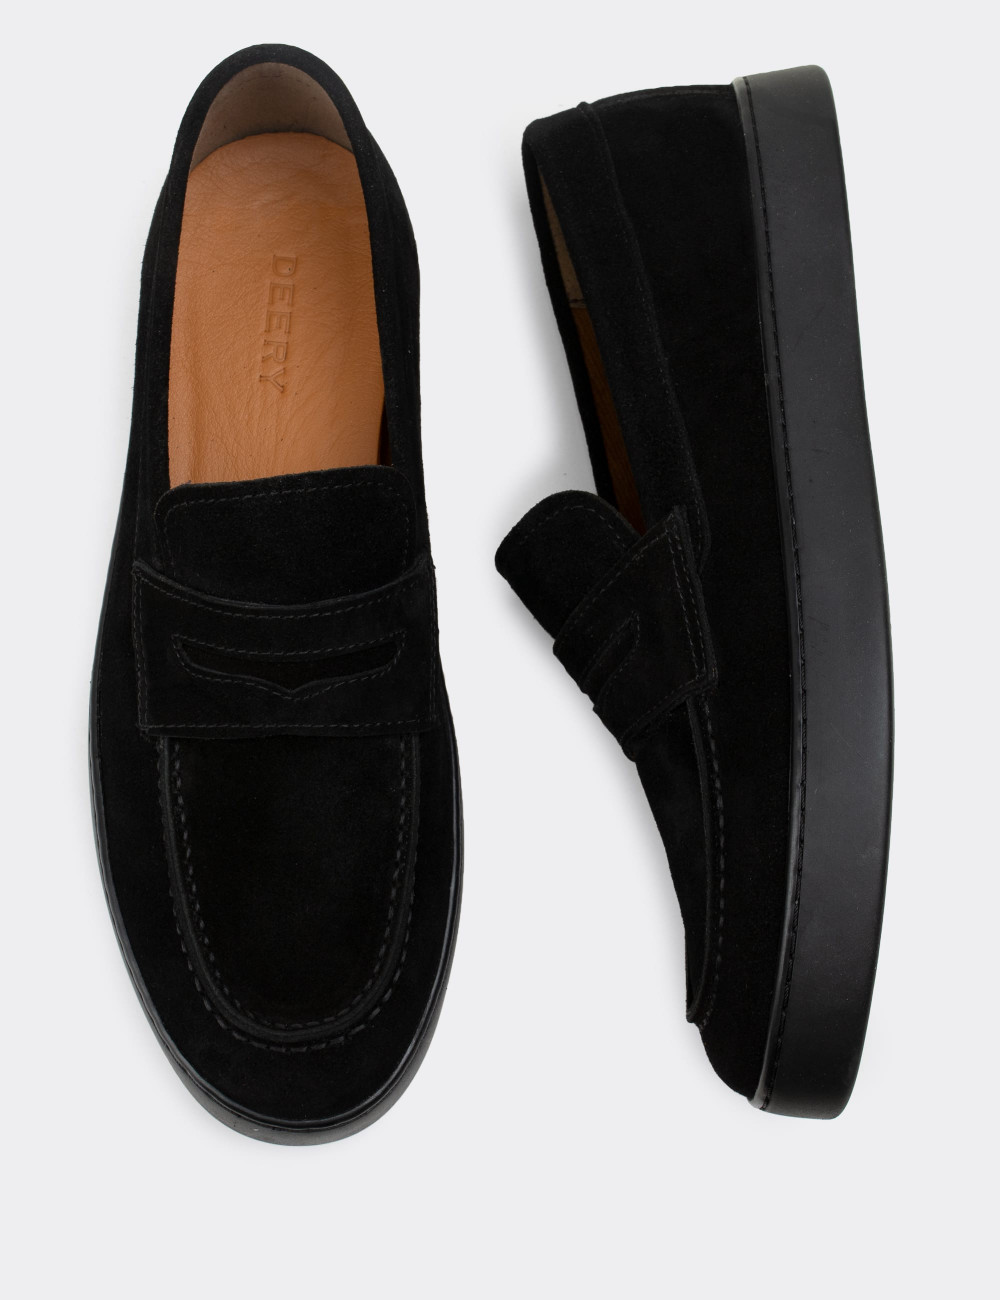 Hakiki Süet Siyah Loafer Erkek Ayakkabı - 01870MSYHC01